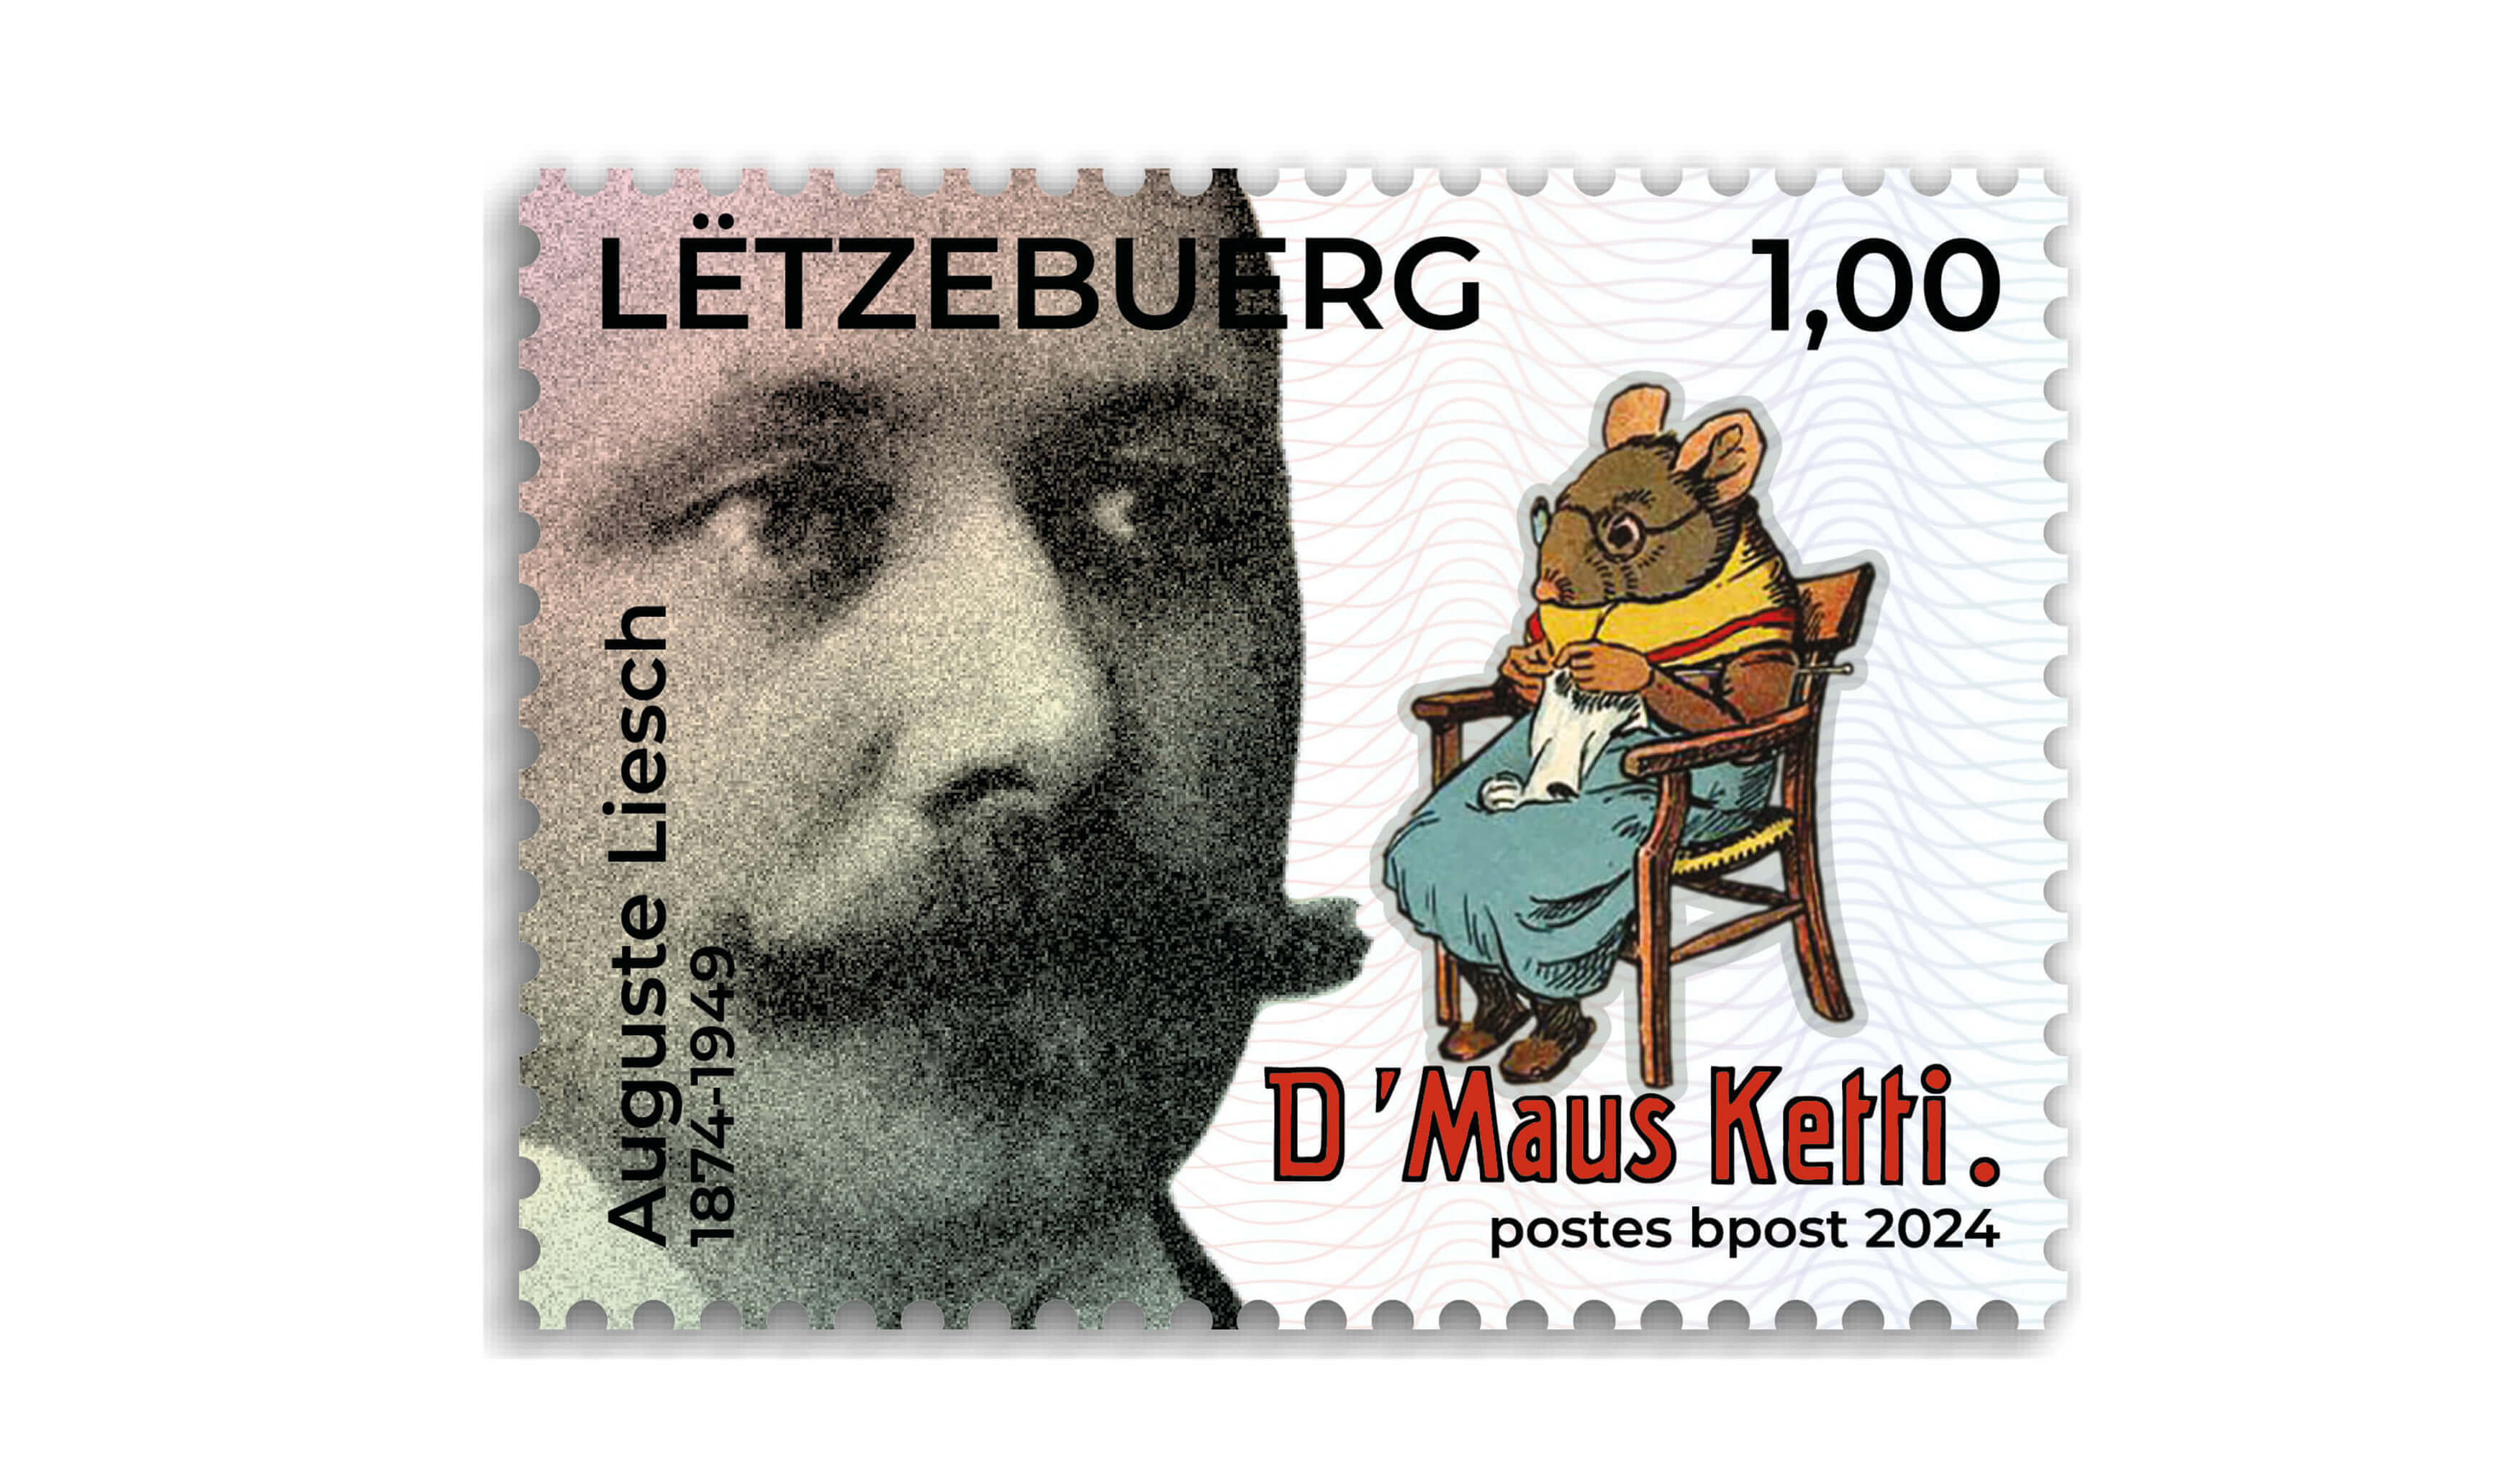 150th anniversary of Auguste Liesch